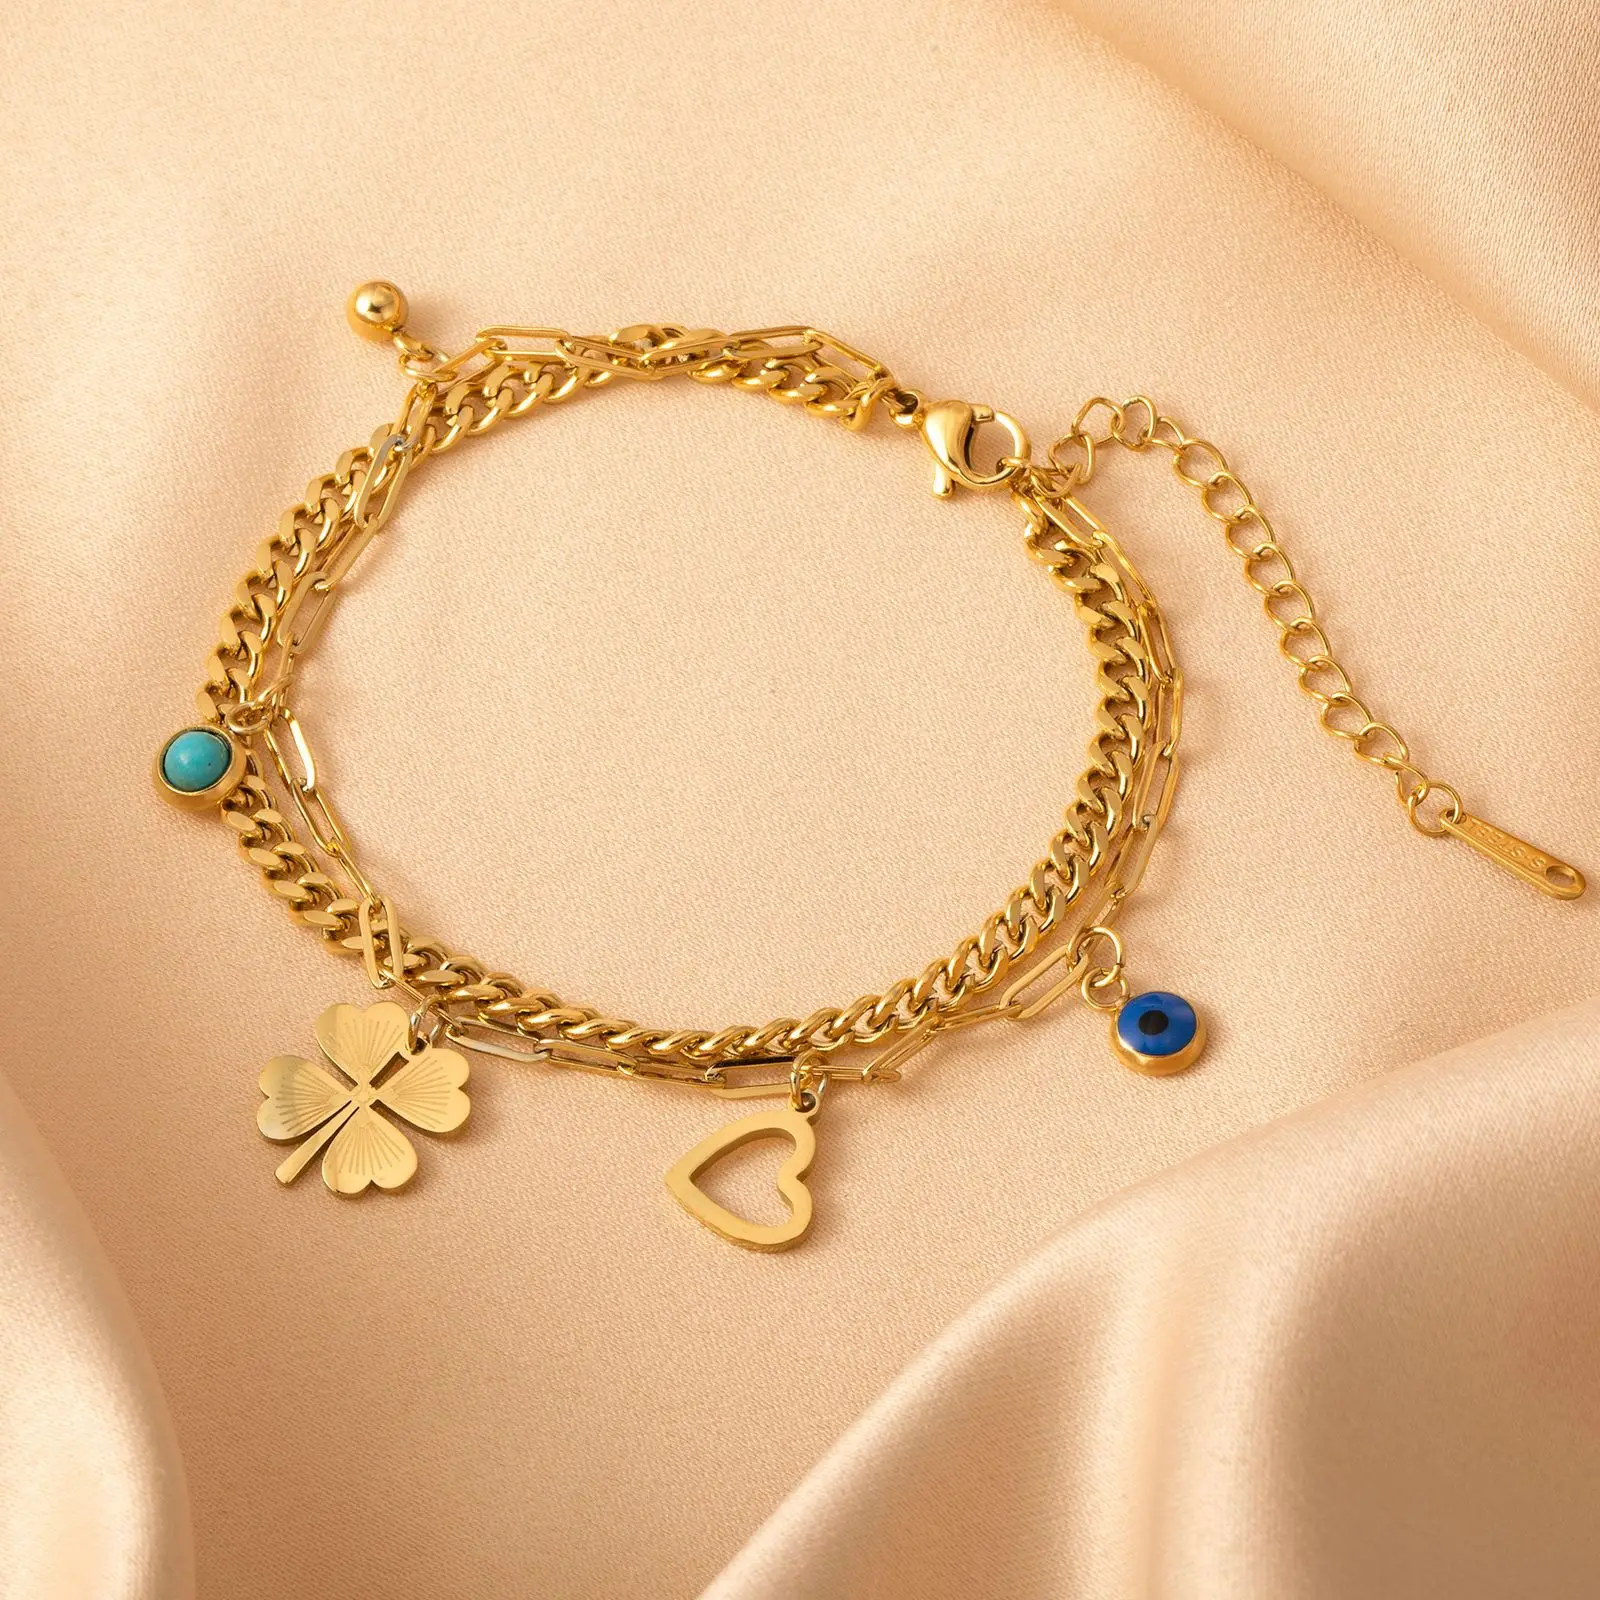 

Four Leaf Clover Love Evil Eye Pendant Bracelet Multilayer Bracelet for Women Stainless Steel Luxury Bangles Jewelry Gift